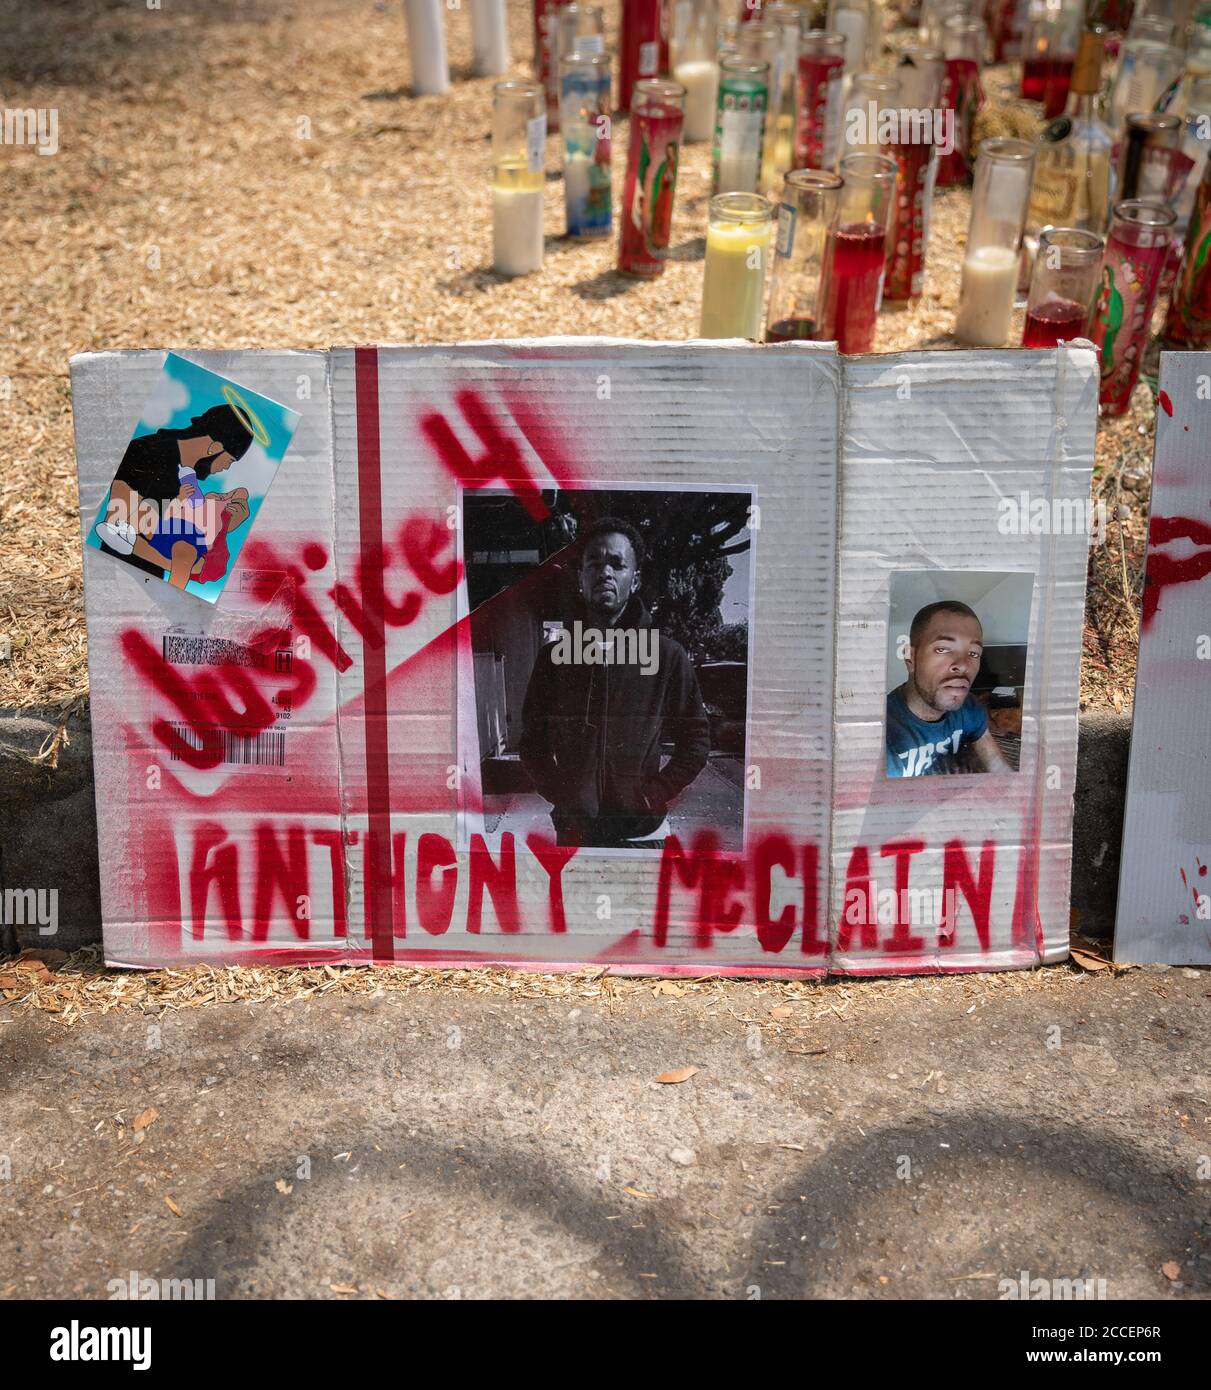 Pasadena, Californie, États-Unis. 21 août 2020. Mémorial de bord de route dédié à Anthony McClain, près de l'avenue N. Raymond où il a été tué par un policier de Pasadena le 15 août 2020. Crédit : Jim Newberry/Alay Live News Banque D'Images